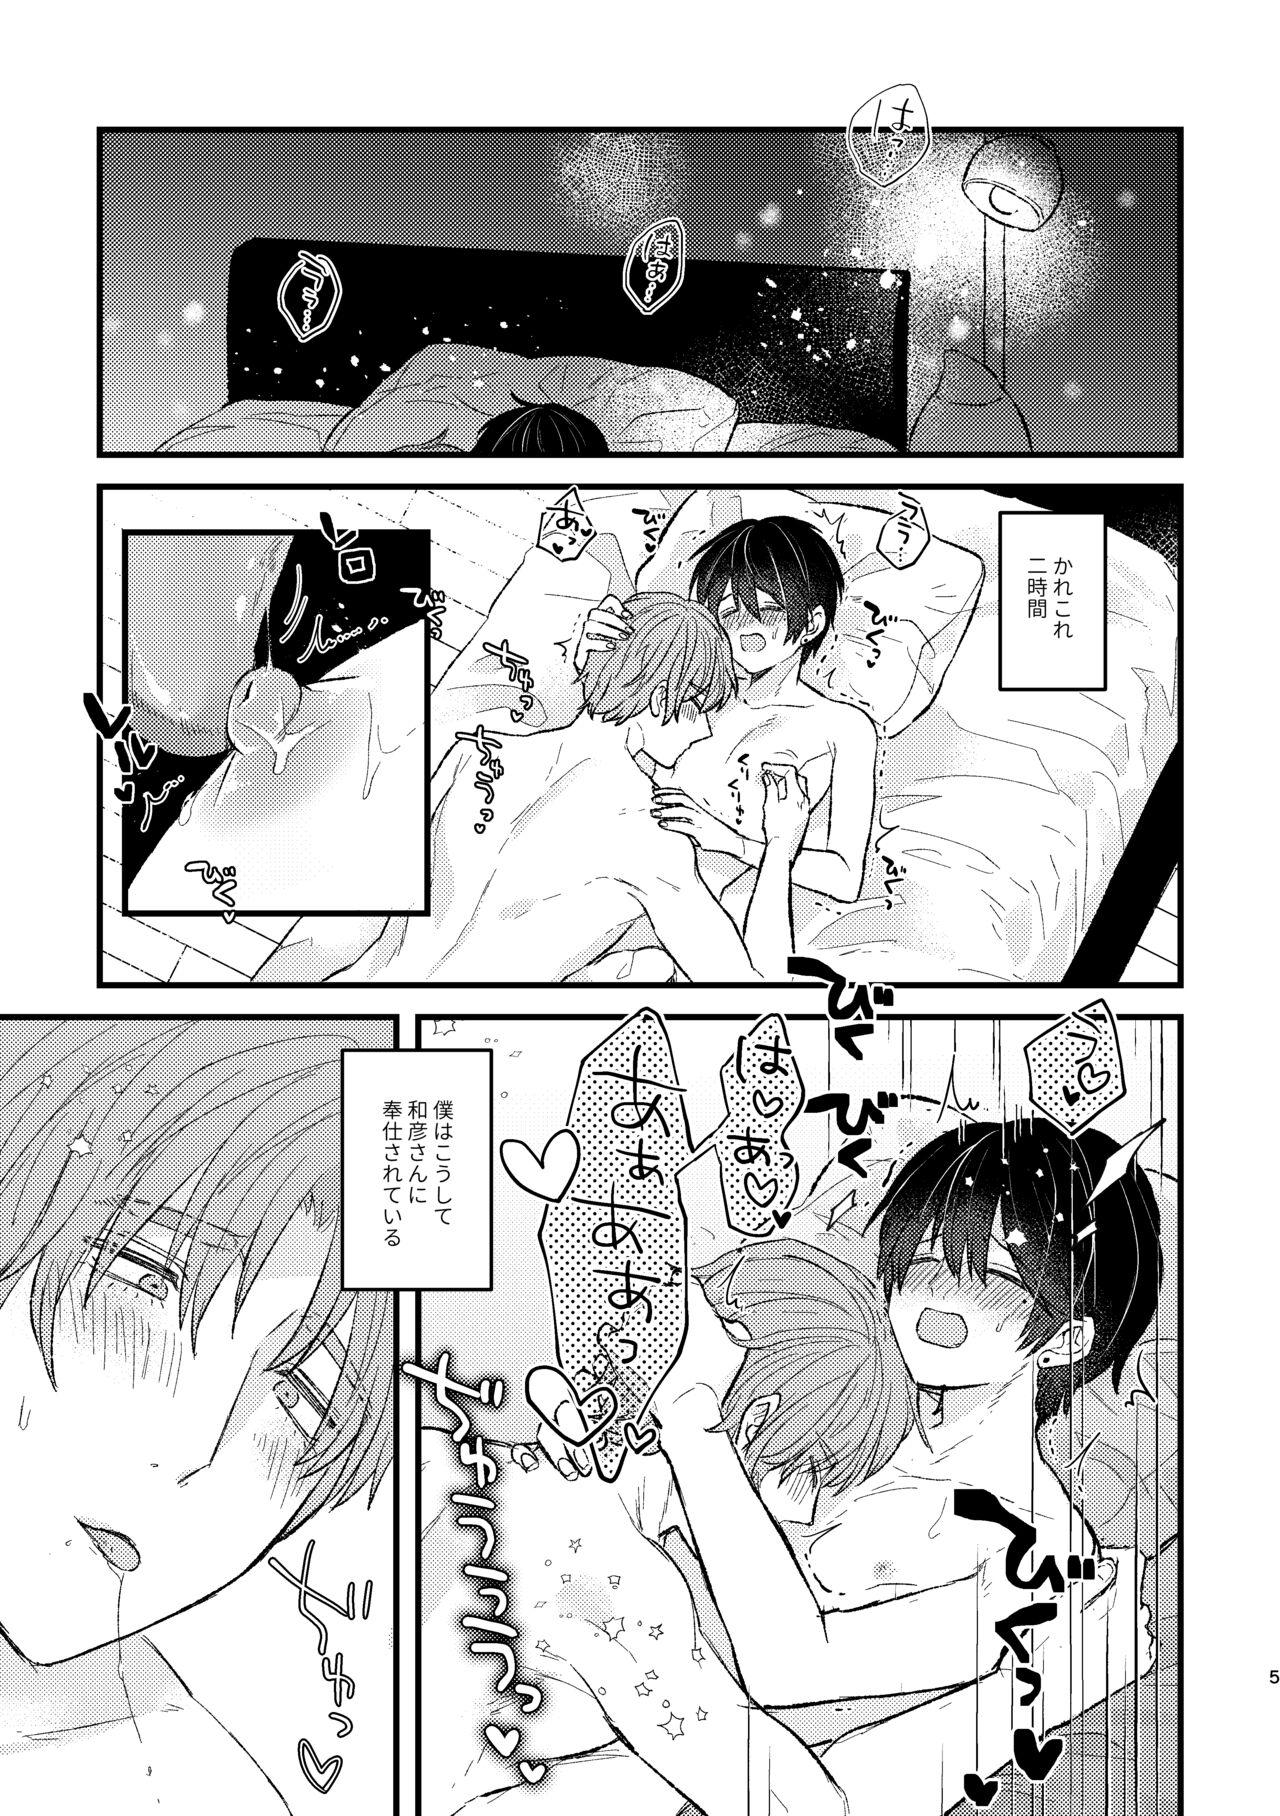 Hoe Amayakashite, My Darling Story - Page 5